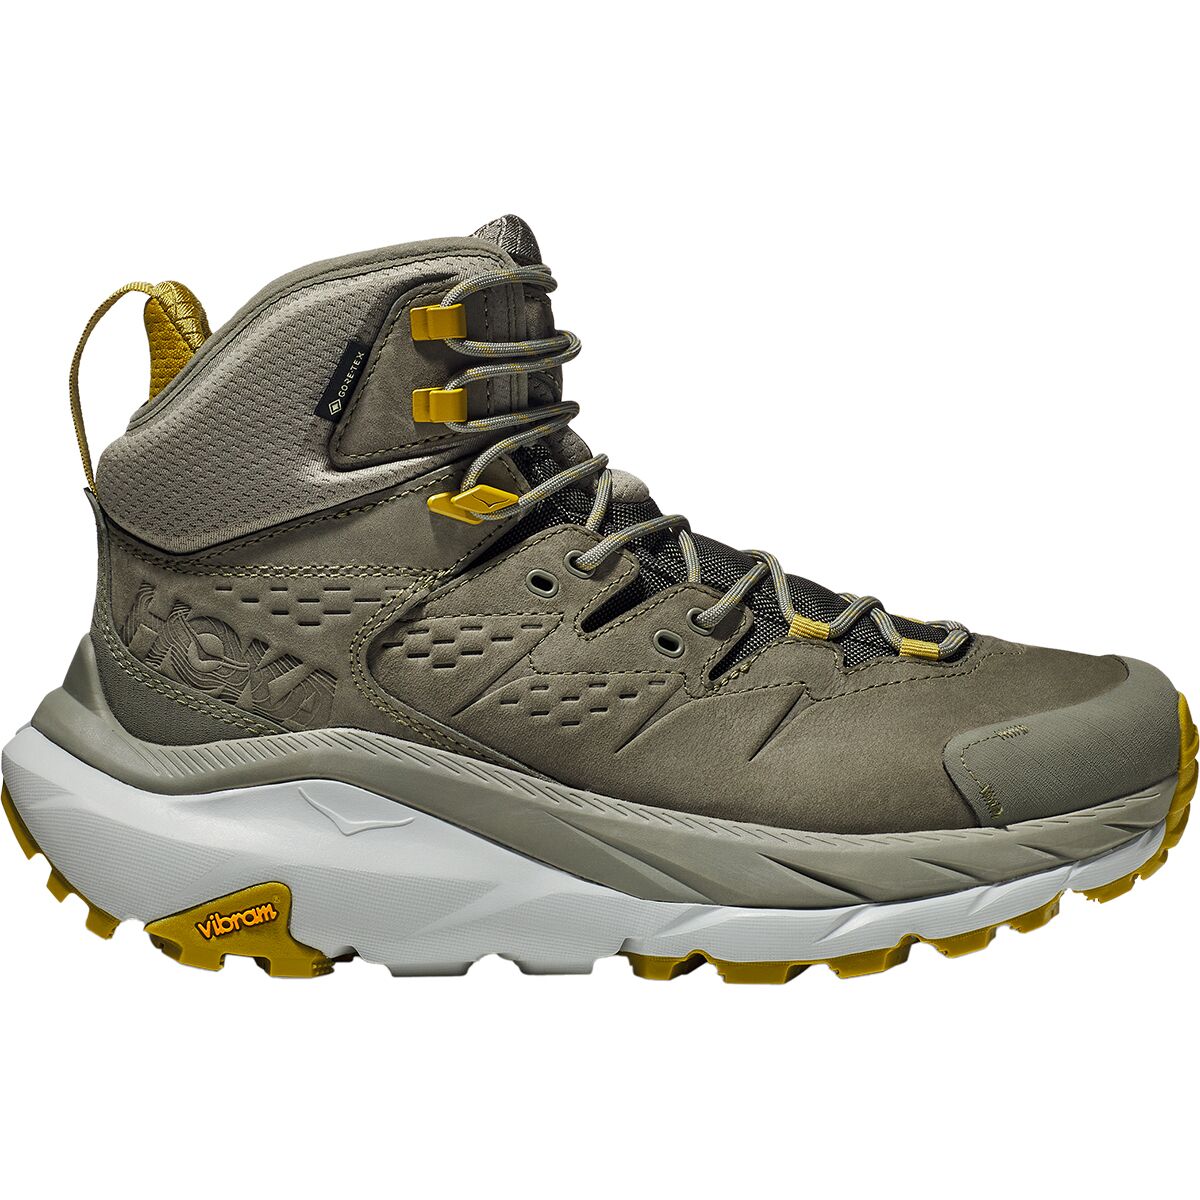 Kaha 2 GTX Hiking Boot - Men